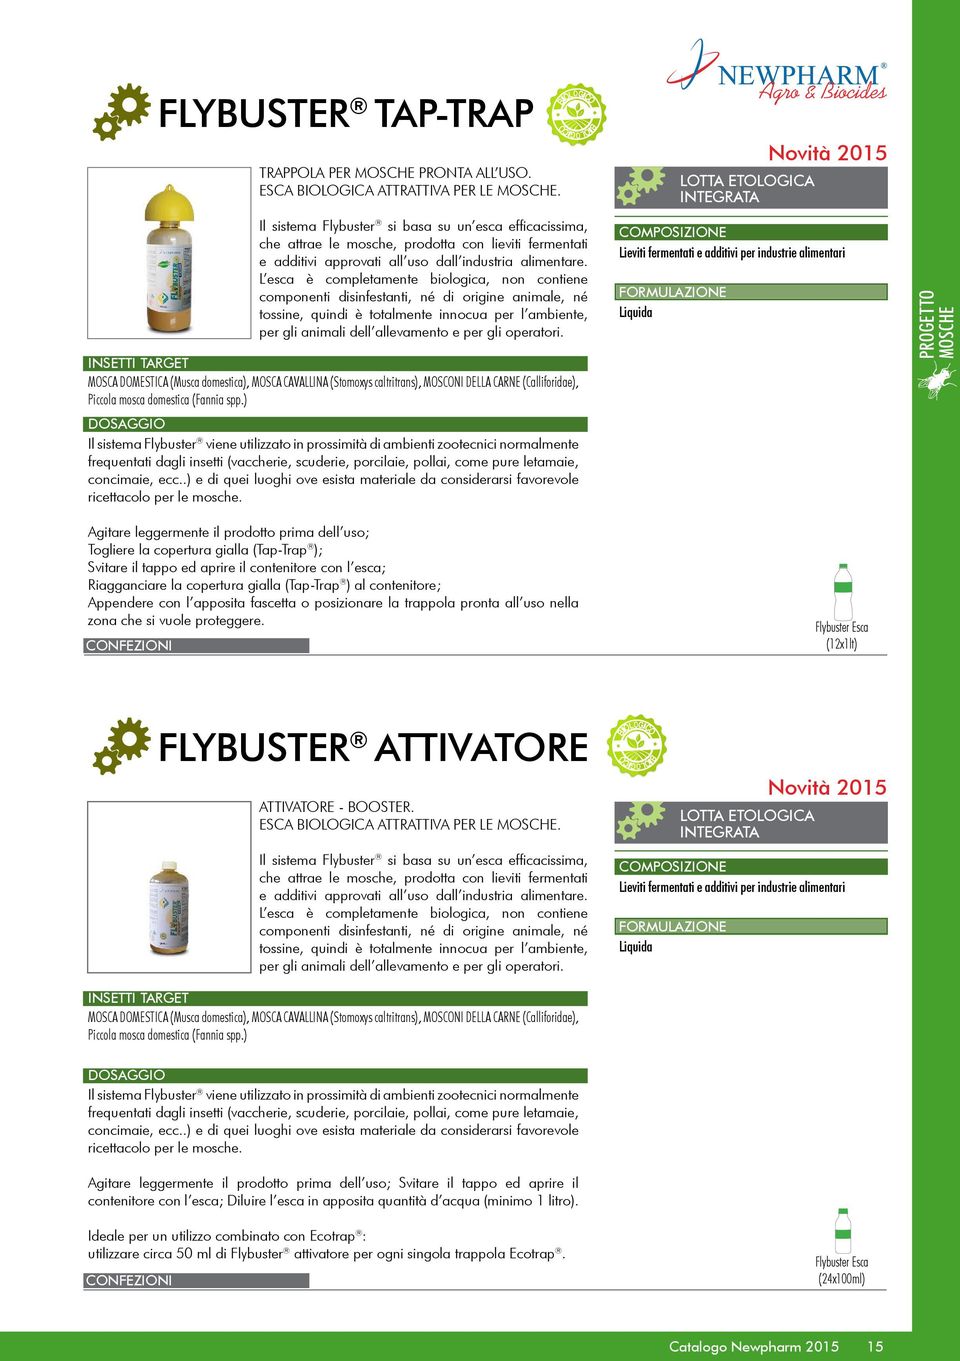 Il sistema Flybuster si basa su un esca efficacissima, che attrae le mosche, prodotta con lieviti fermentati e additivi approvati all uso dall industria alimentare.